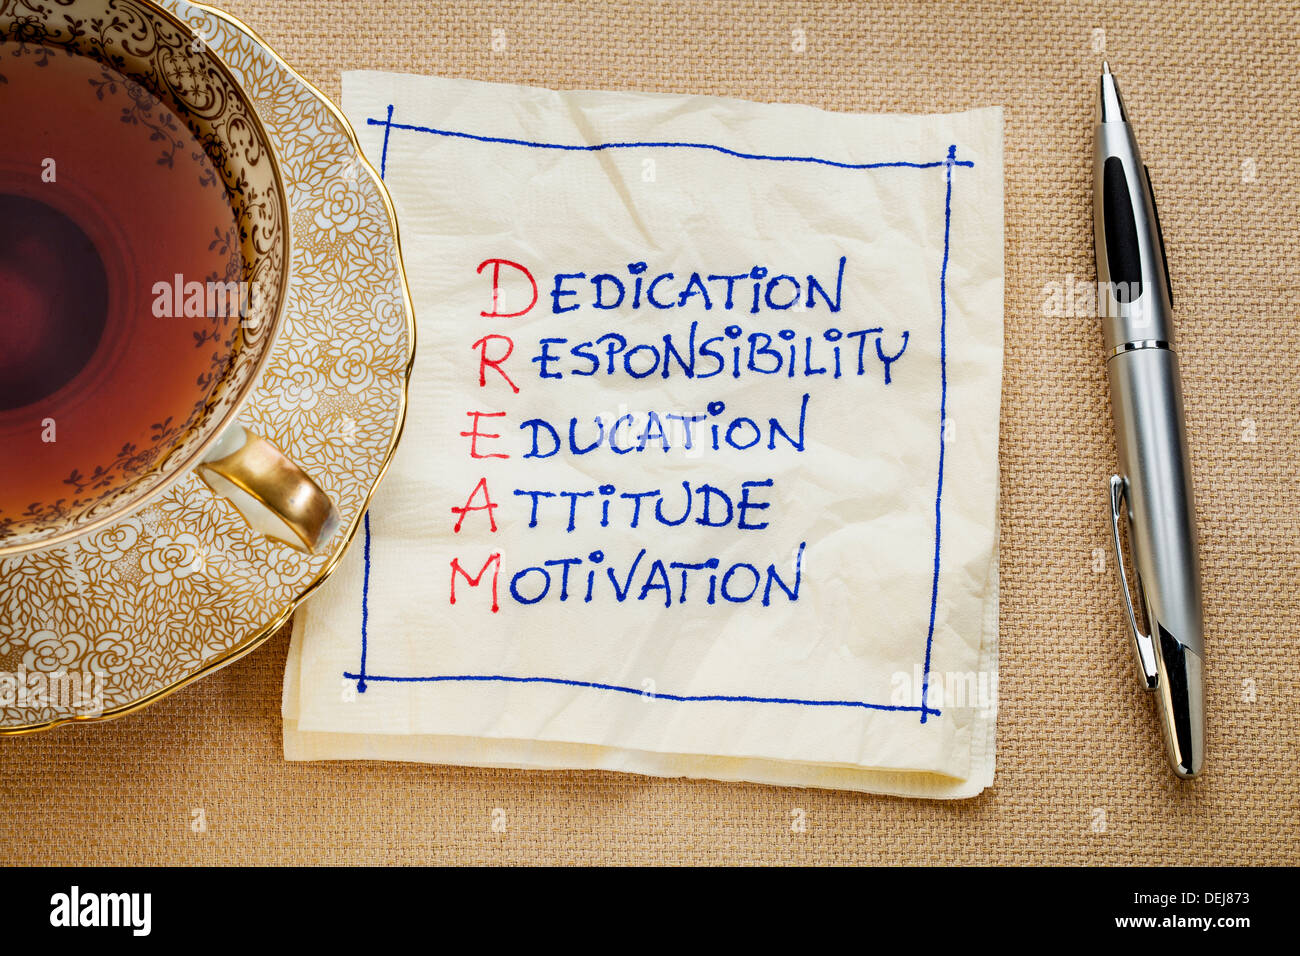 Le dévouement, la responsabilité, l'éducation, l'attitude, la motivation - acronyme de rêve - une serviette de doodle avec une tasse de thé Banque D'Images